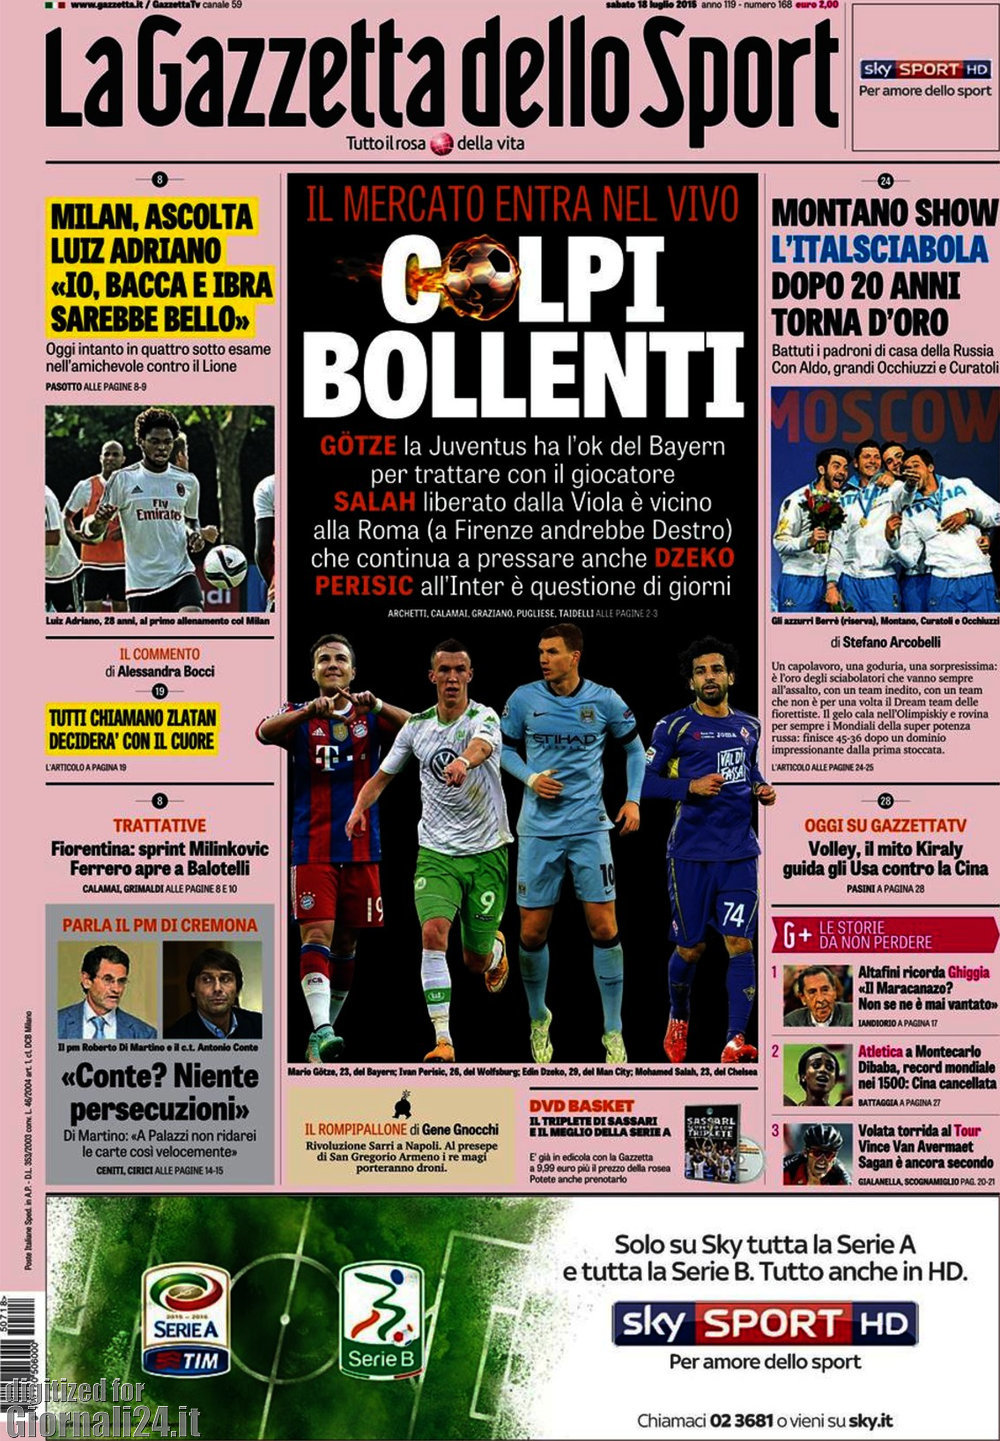 Rassegna stampa 18 luglio 2015: prime pagine di Gazzetta, Corriere e Tuttosport